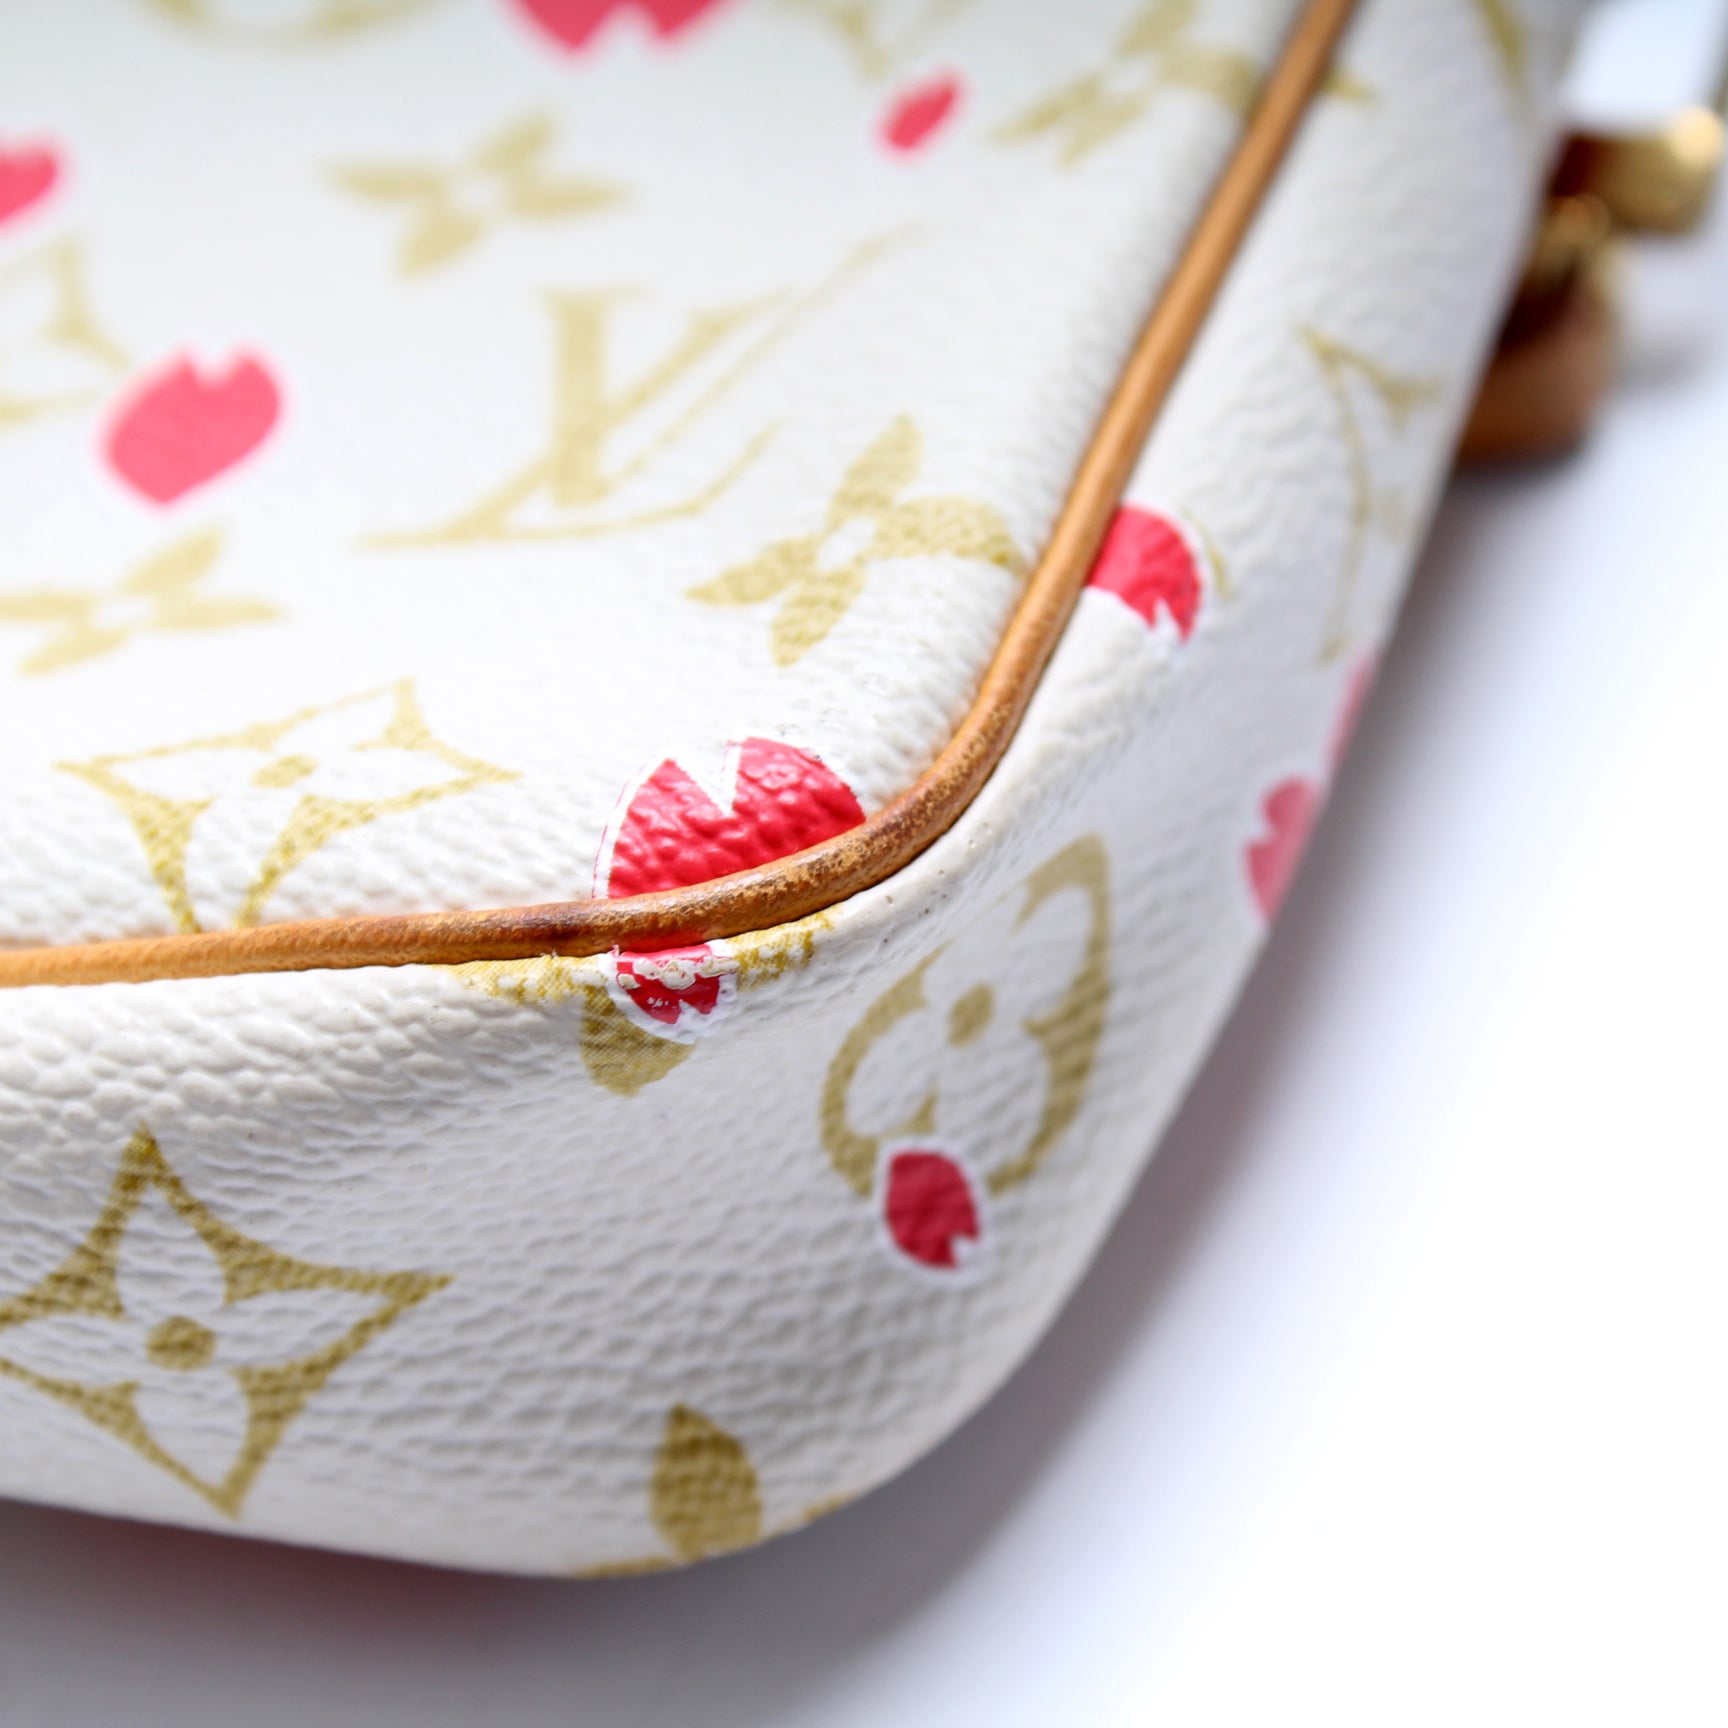 Louis Vuitton Cherry Blossom Pochette Accessories - LVLENKA Luxury